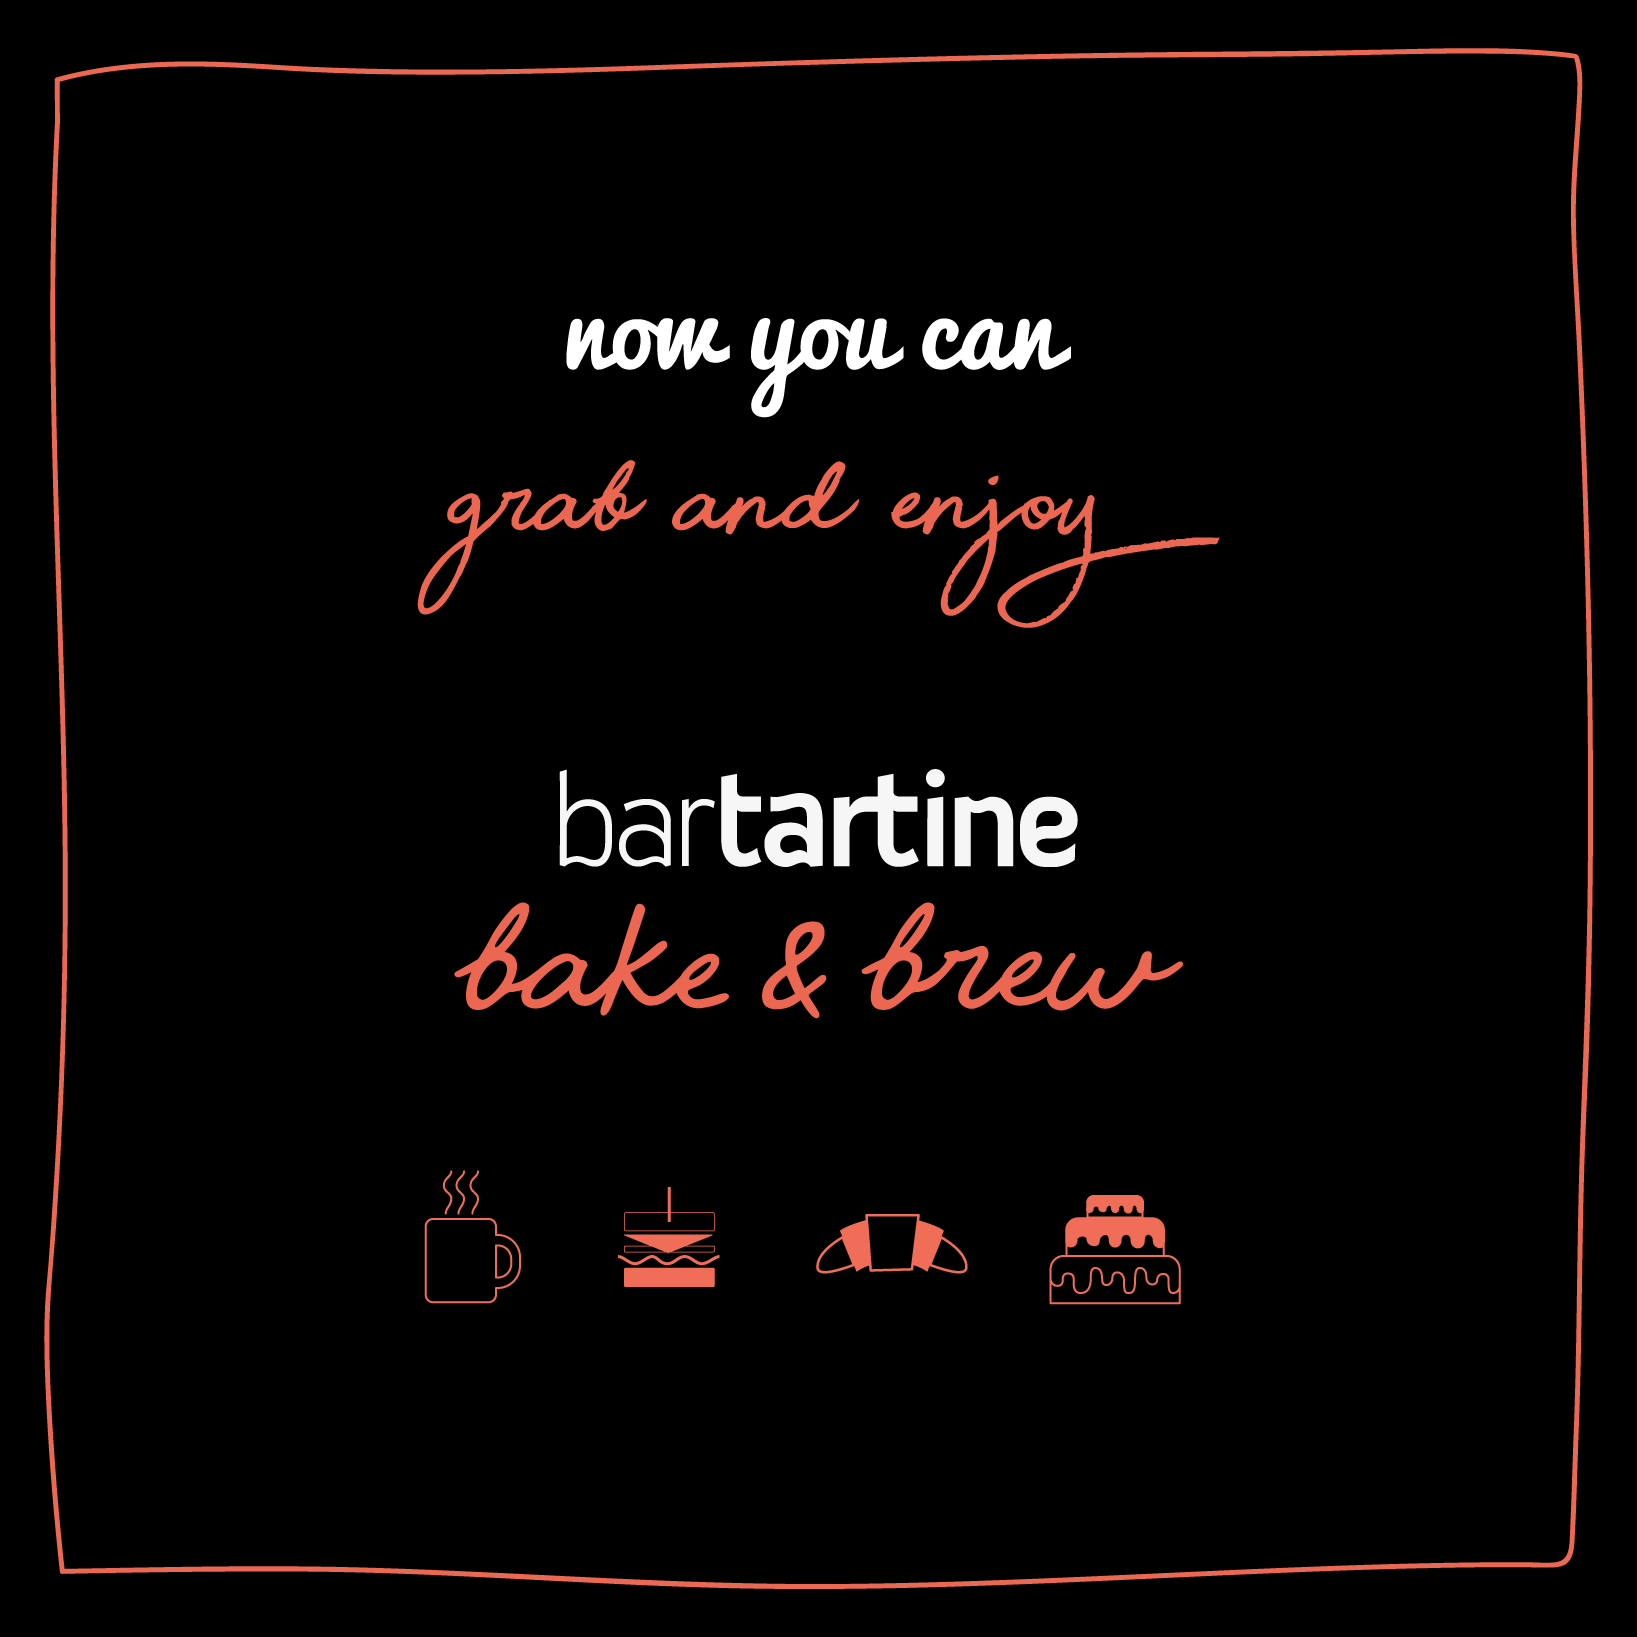 Bartartine Bake & Brew!